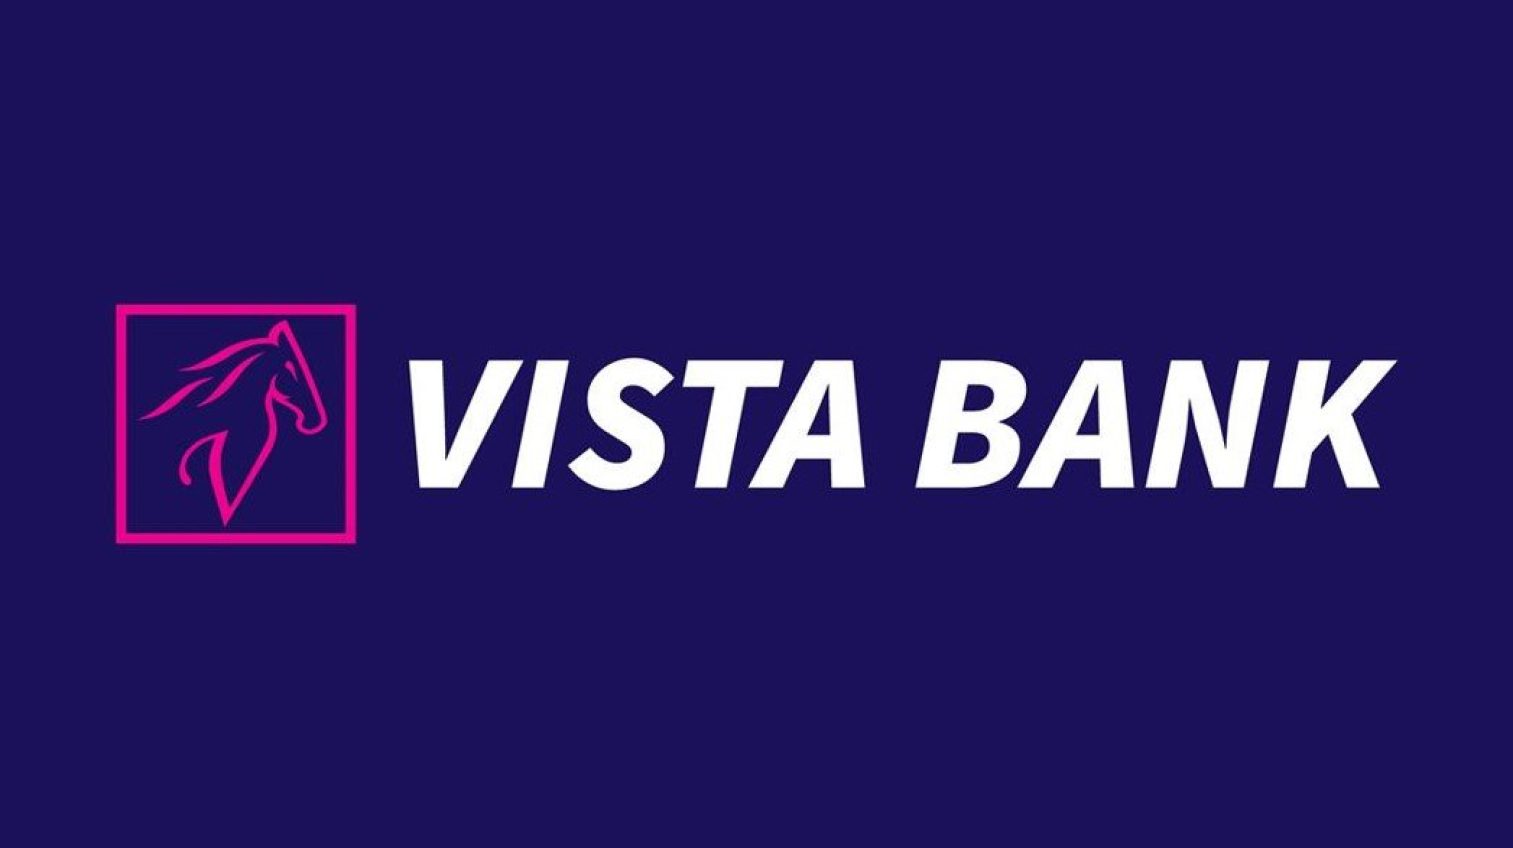 Vista Bank Logo